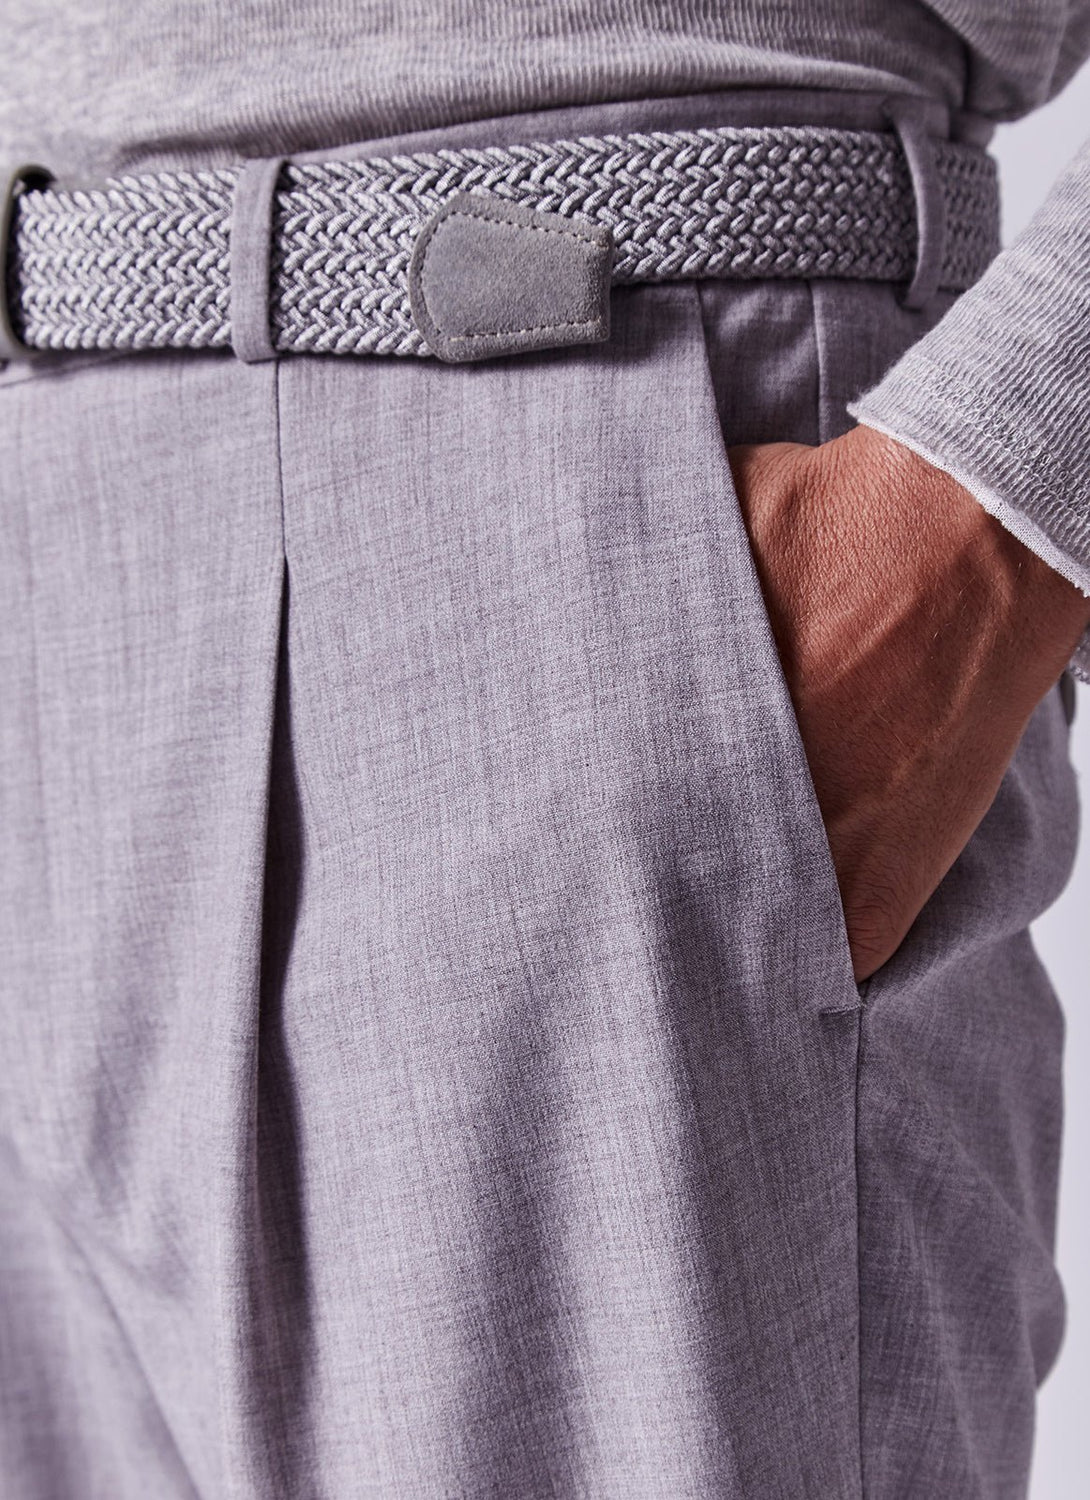 Men Belt | Braided Belt With Suede Detail by Spanish designer Adolfo Dominguez